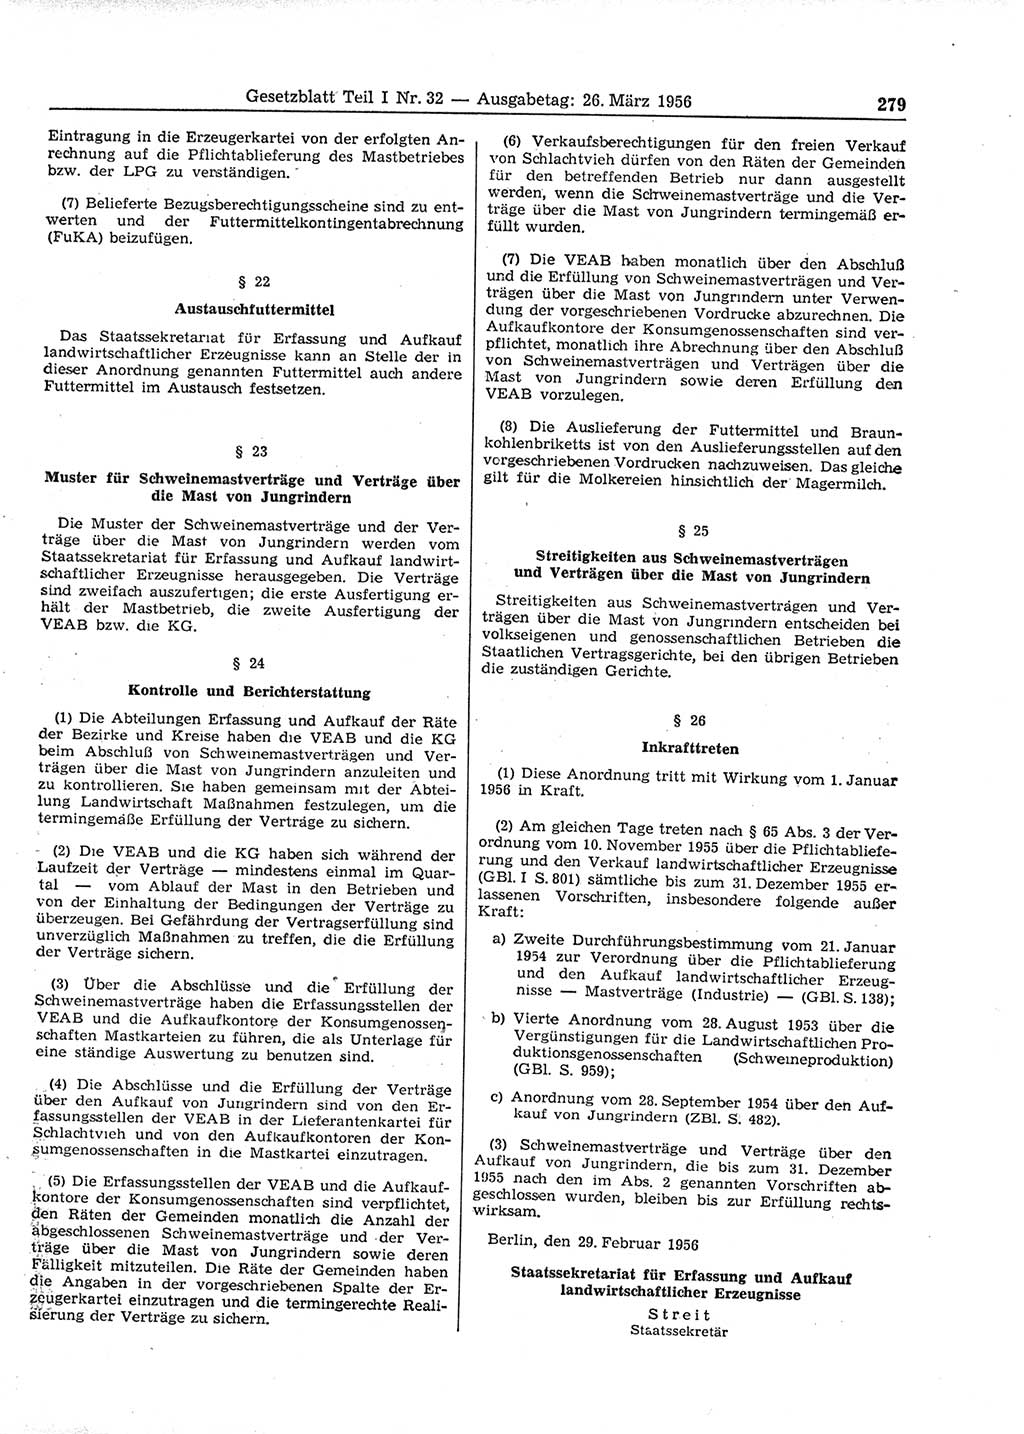 Gesetzblatt (GBl.) der Deutschen Demokratischen Republik (DDR) Teil Ⅰ 1956, Seite 279 (GBl. DDR Ⅰ 1956, S. 279)